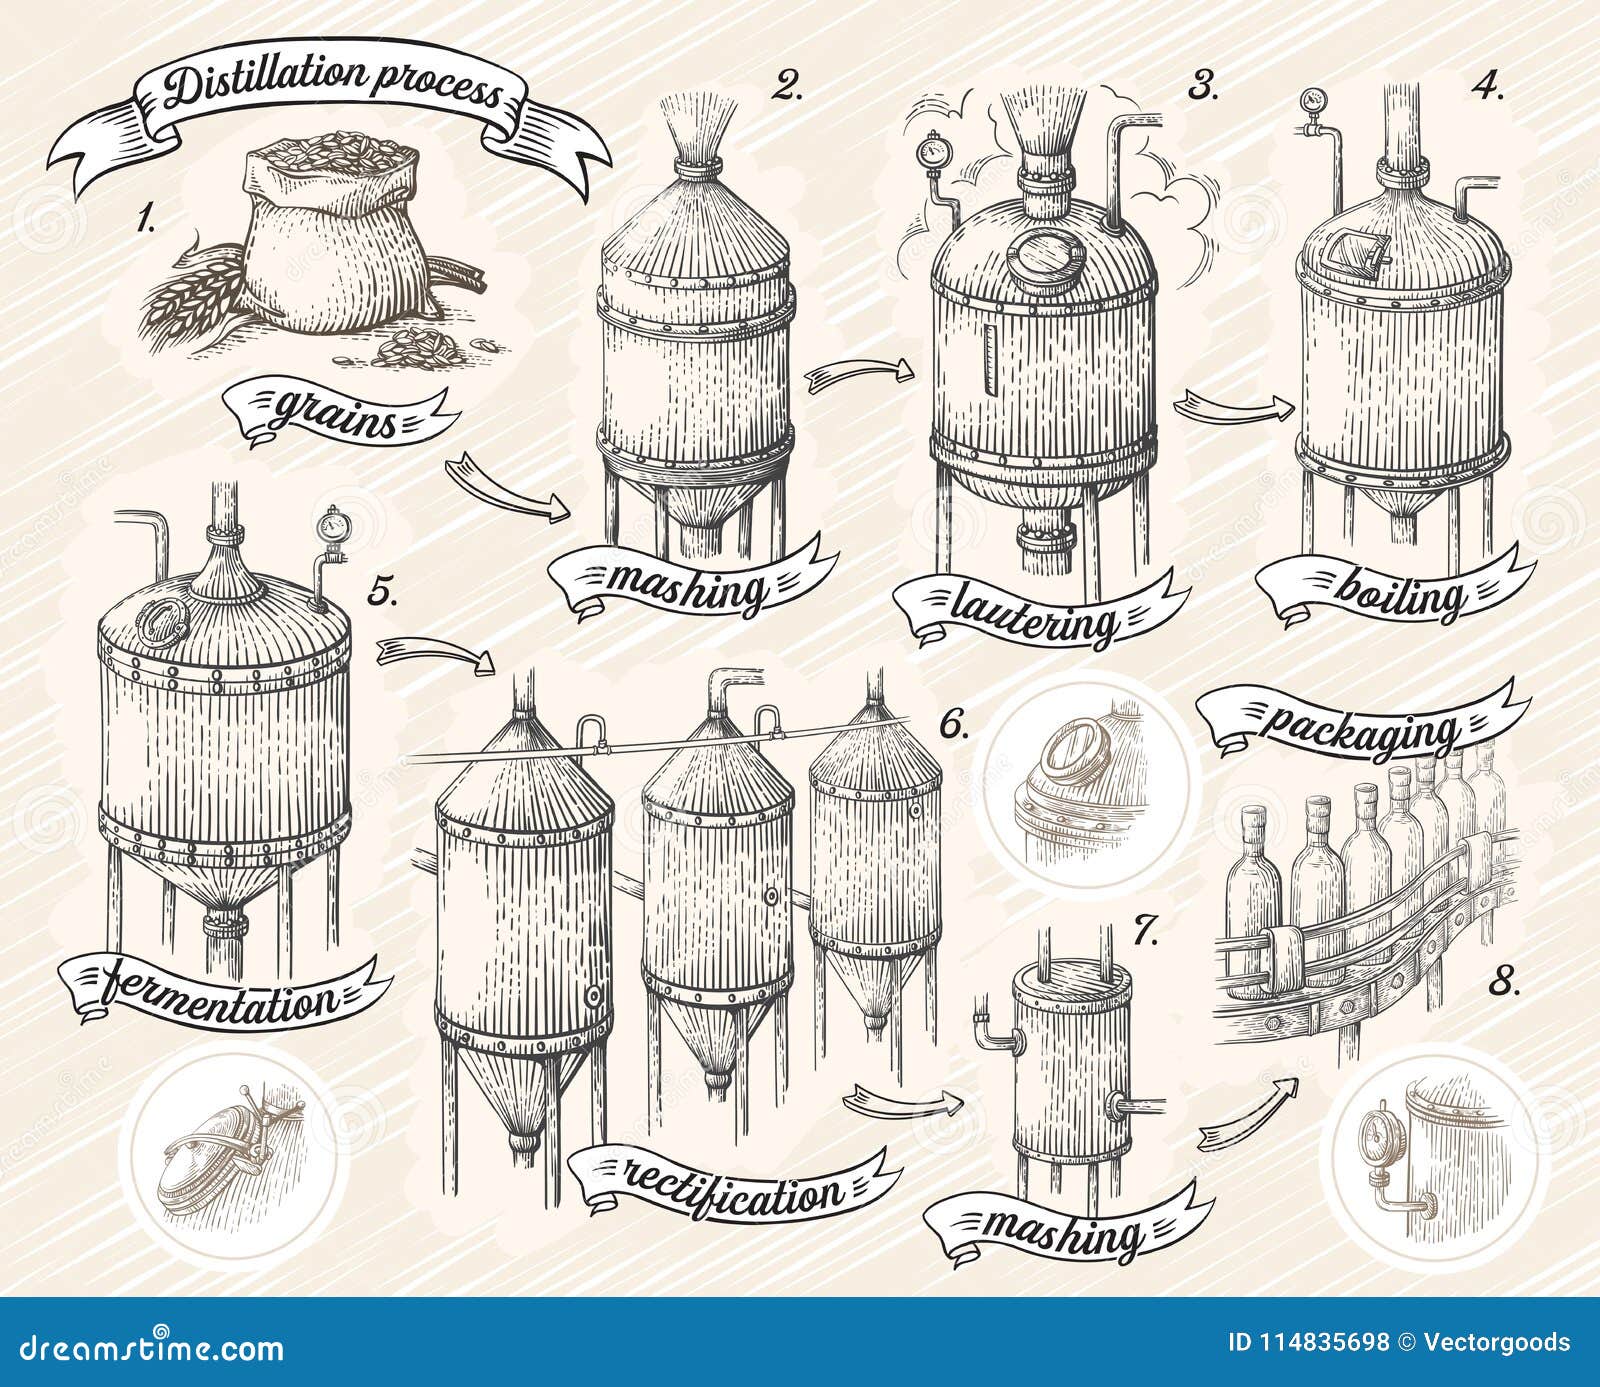 vintage distillation apparatus sketch. moonshining  